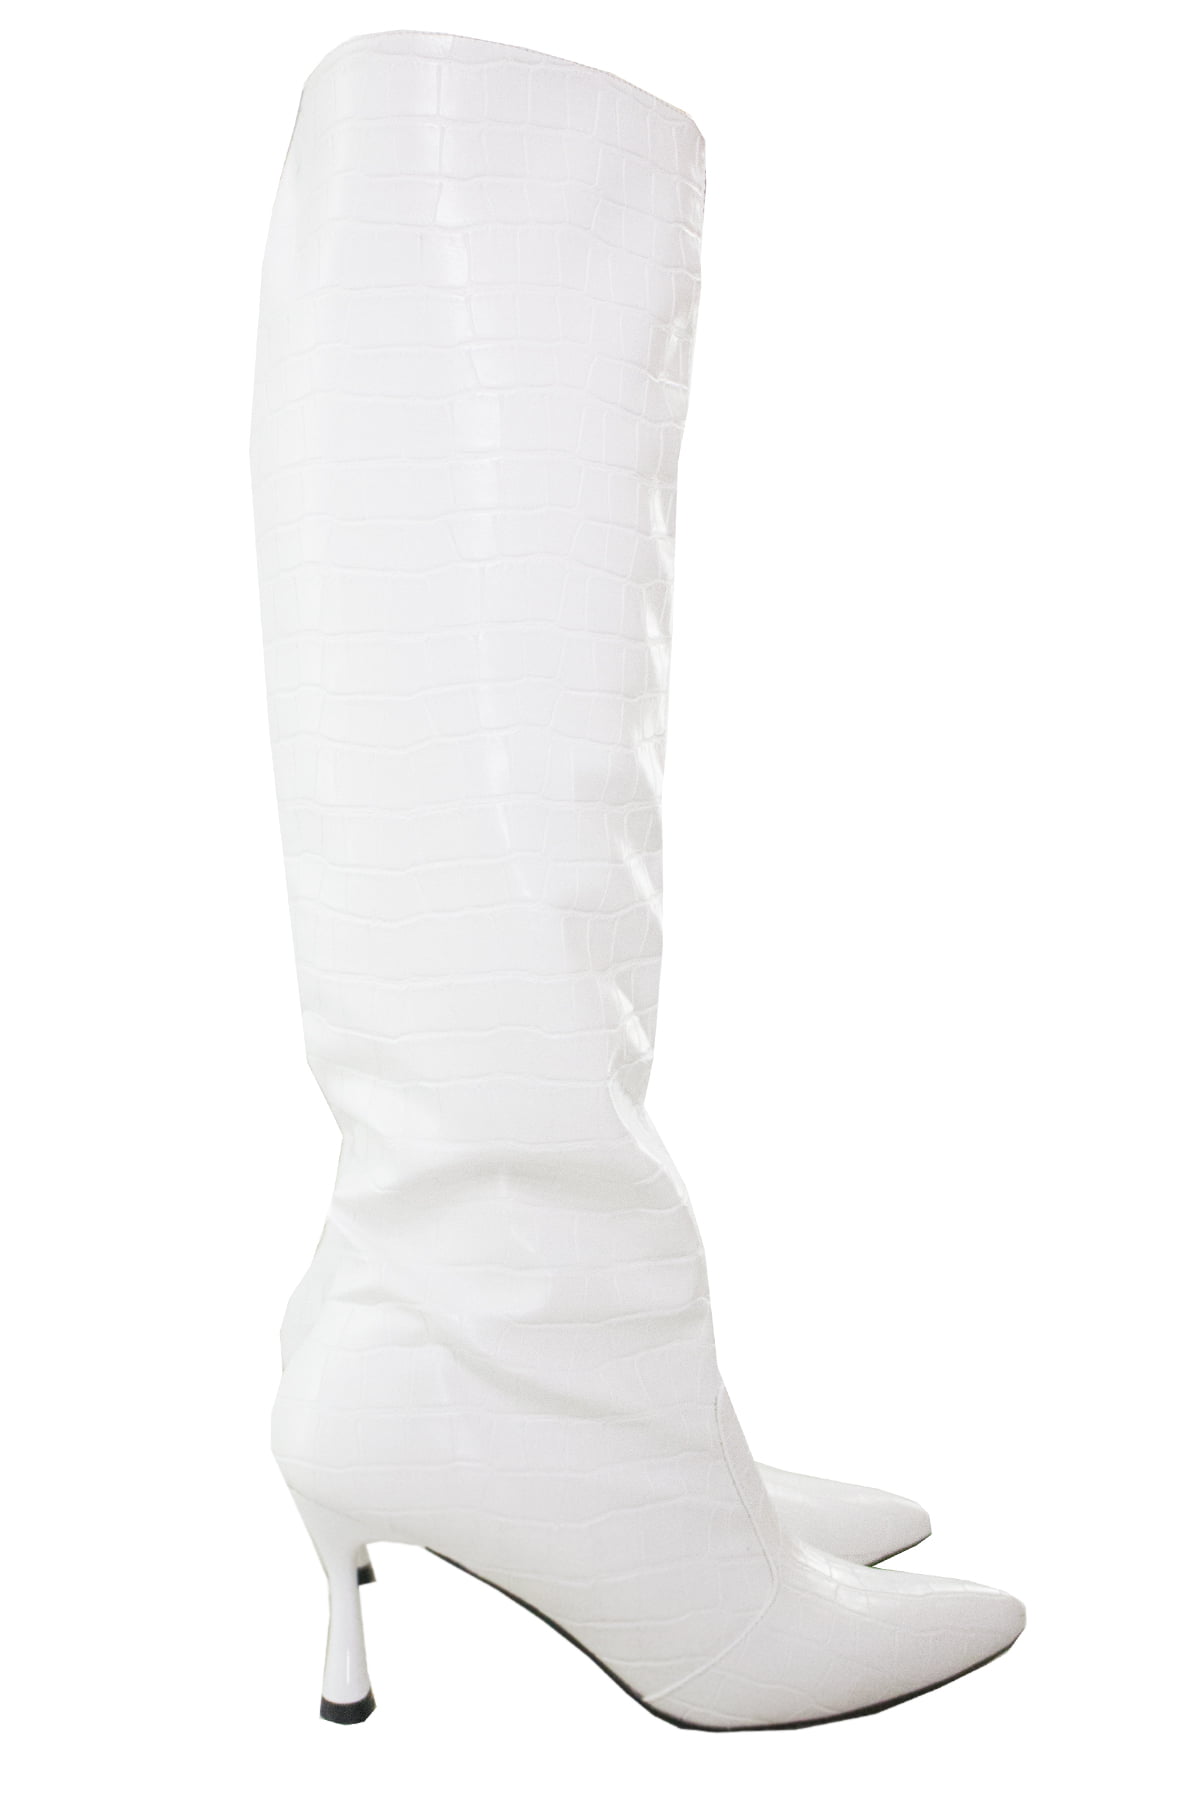 Stivali donna al ginocchio bianchi coccodrillo con cerniera laterale interna e tacco cono